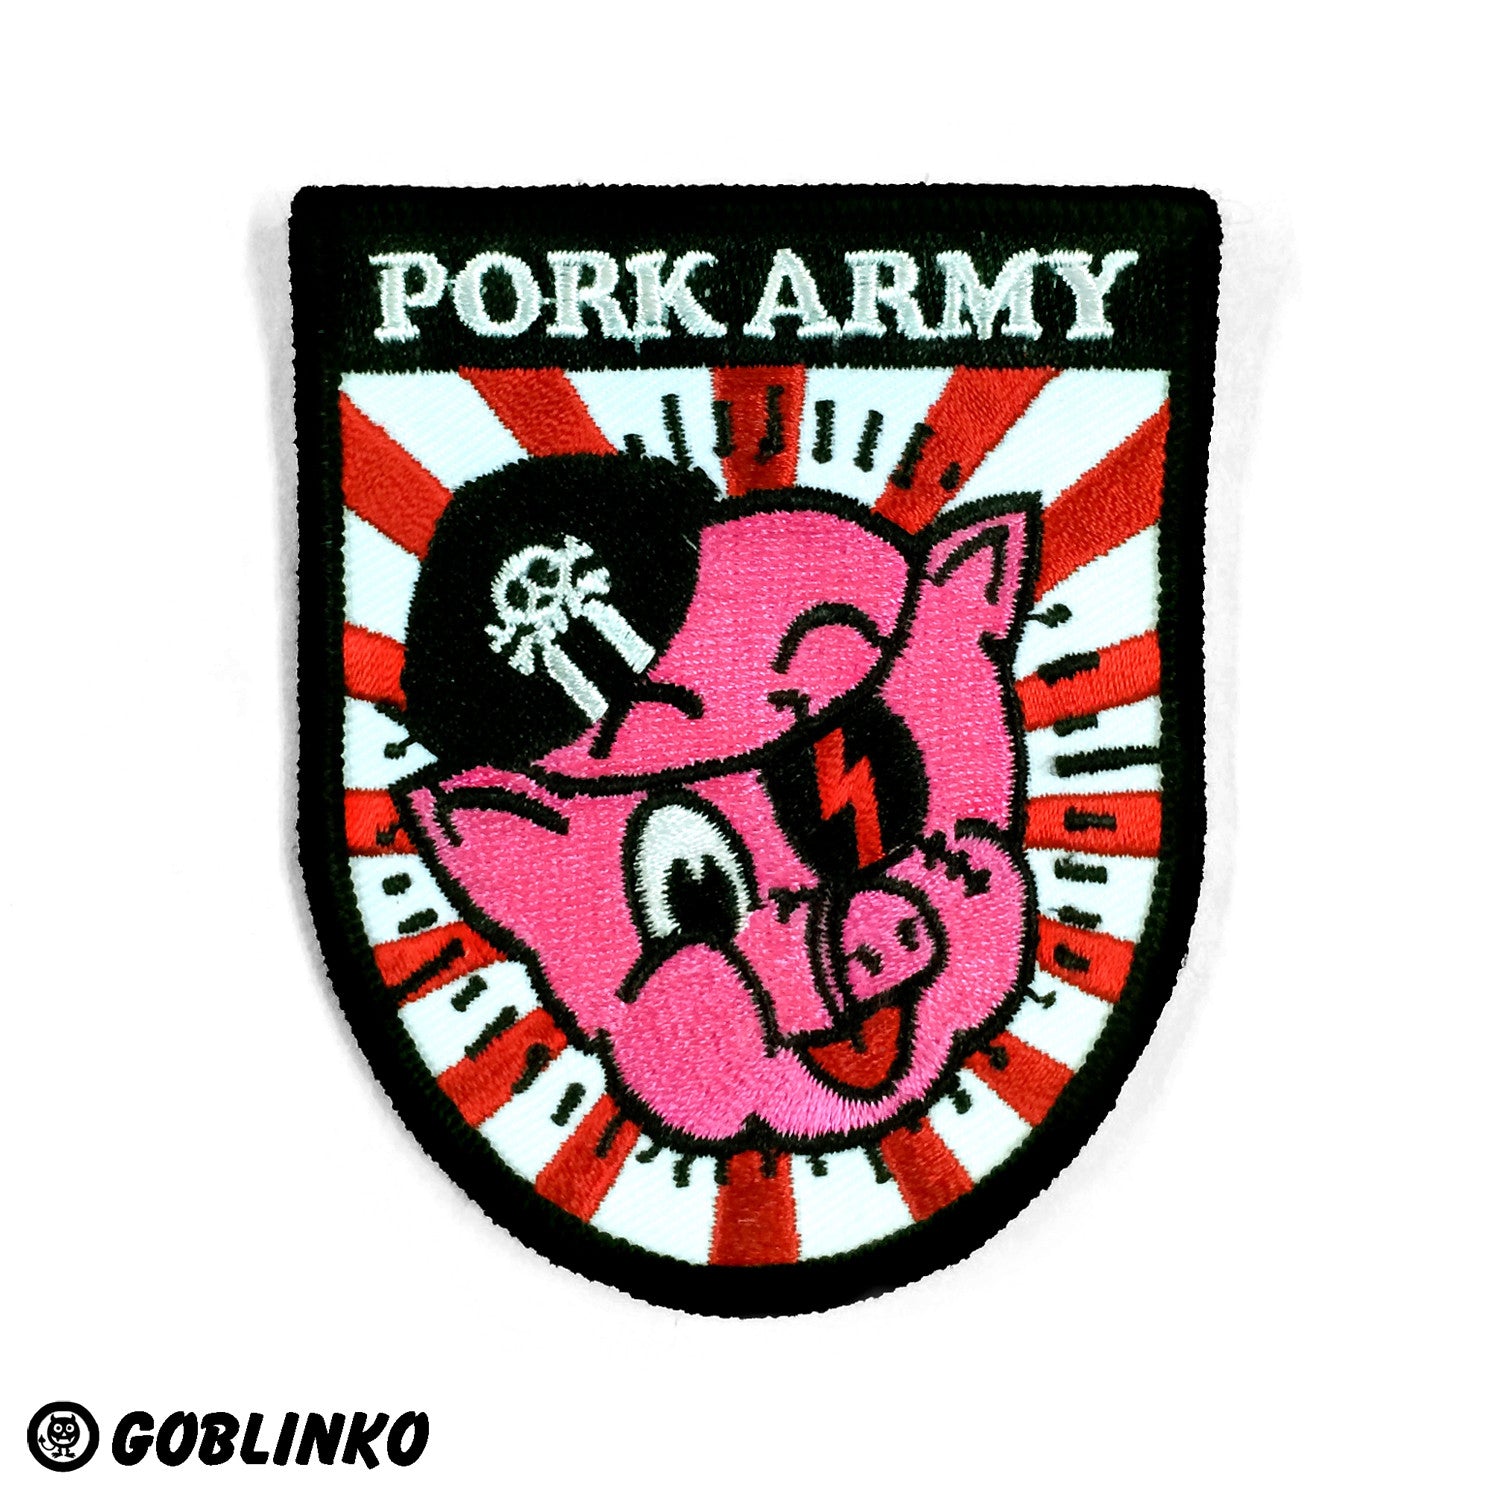 PORK Army Shield Patch